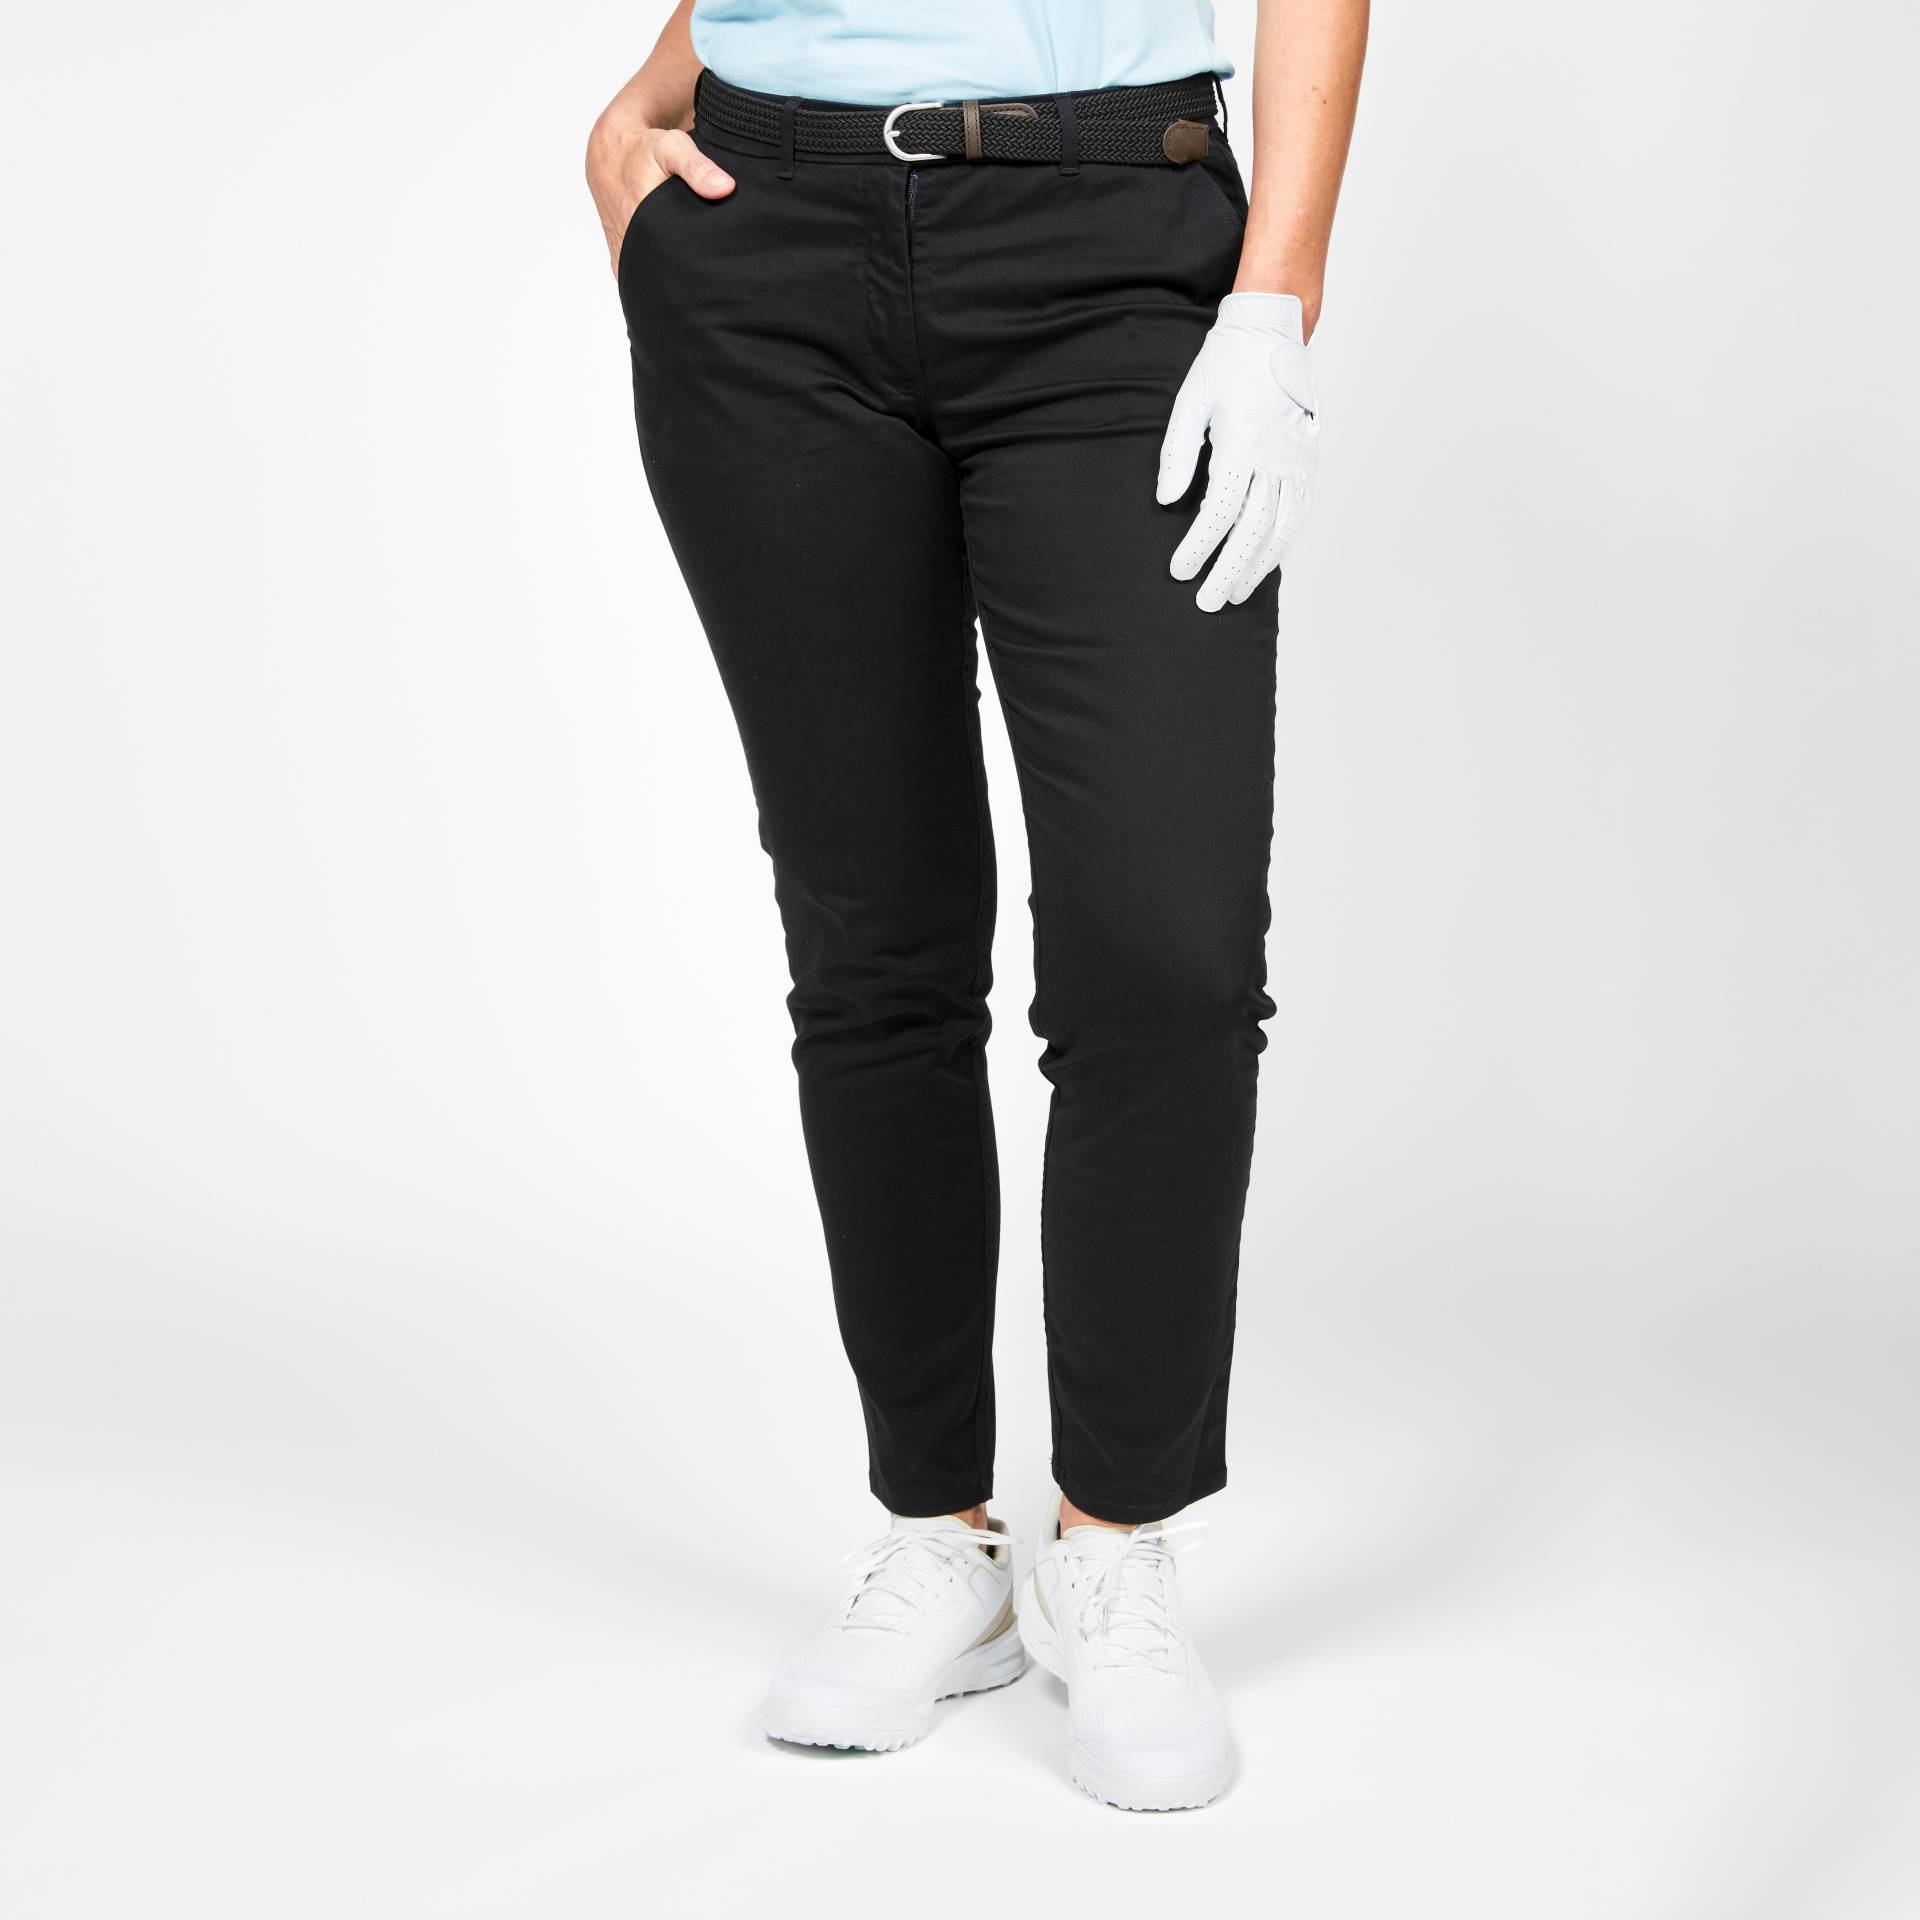 Damen Golf Hose Baumwolle - MW500 schwarz von INESIS